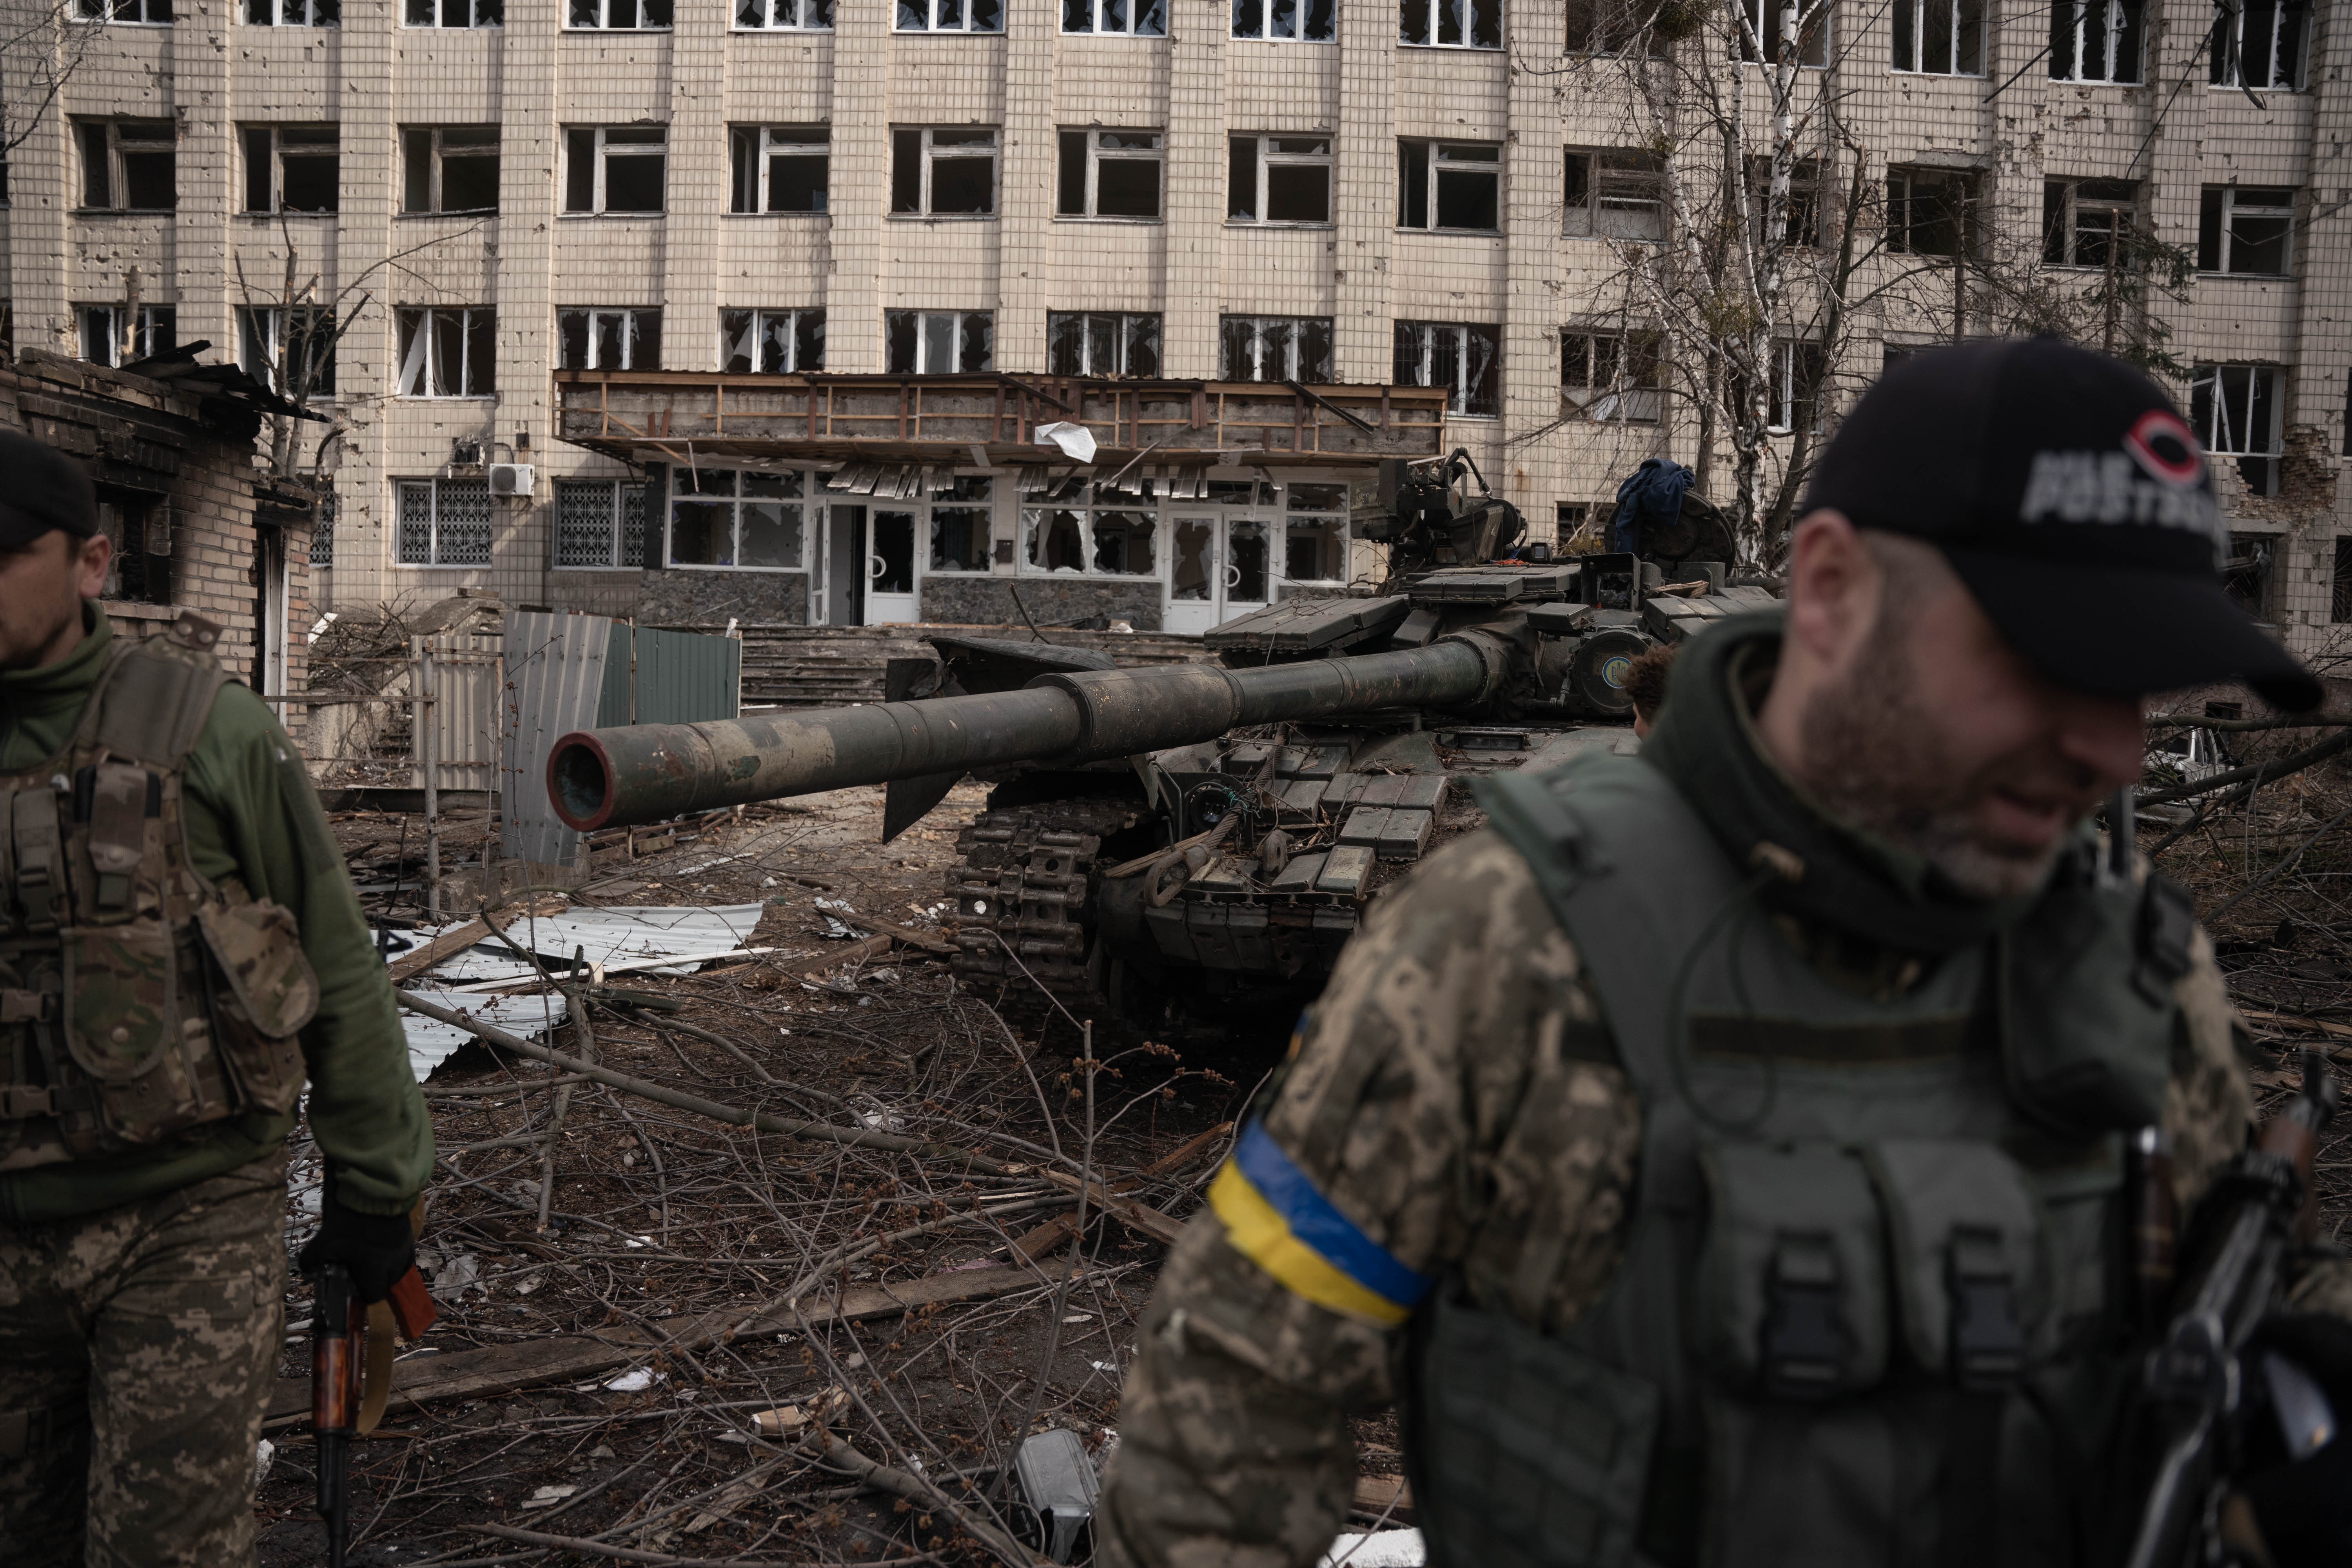 Devastation in Ukraine due to Russian invasion